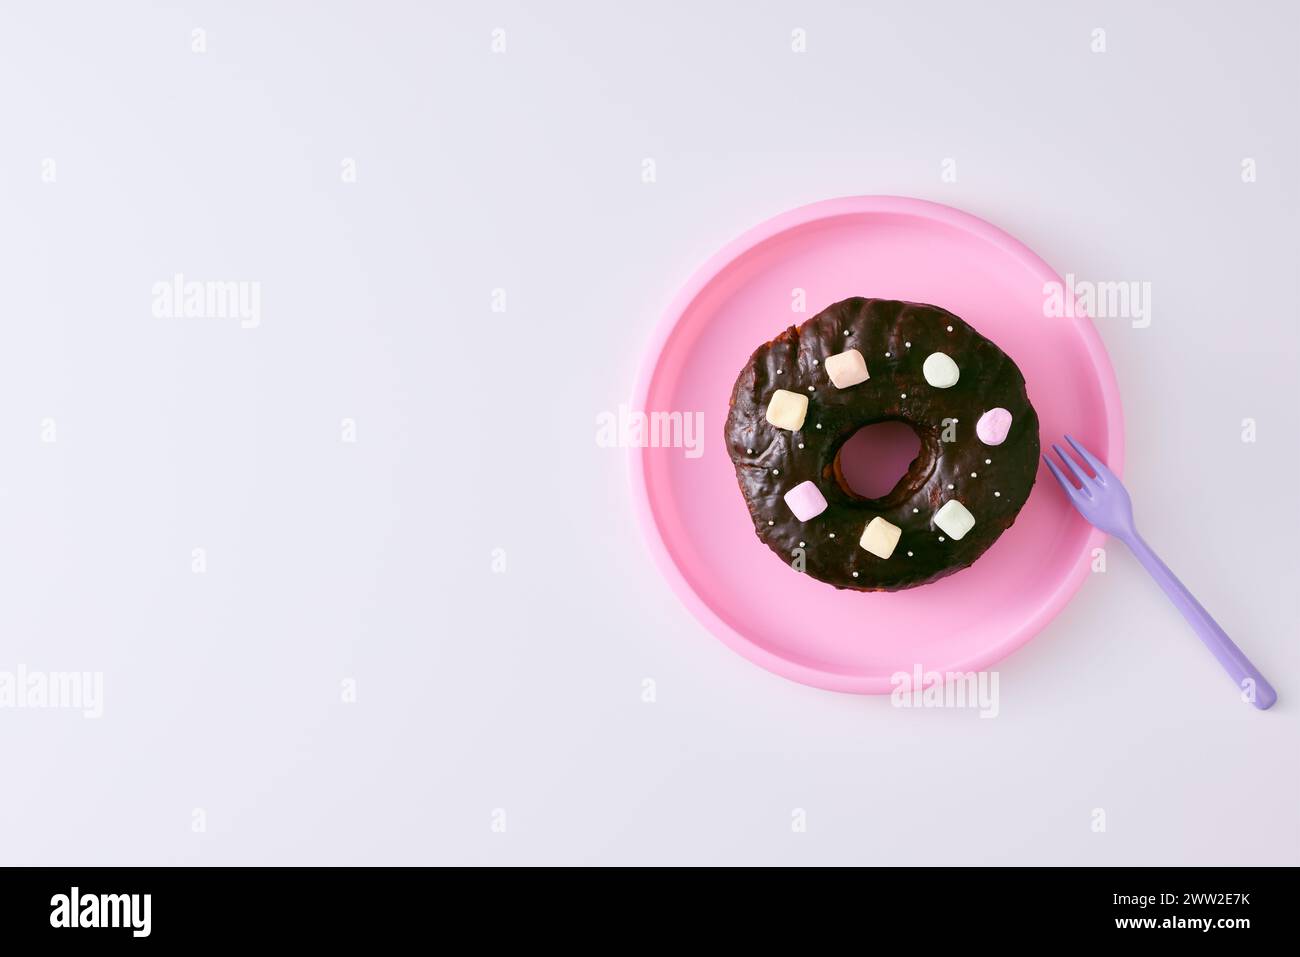 Un beignet au chocolat avec des guimauves sur une assiette rose Banque D'Images